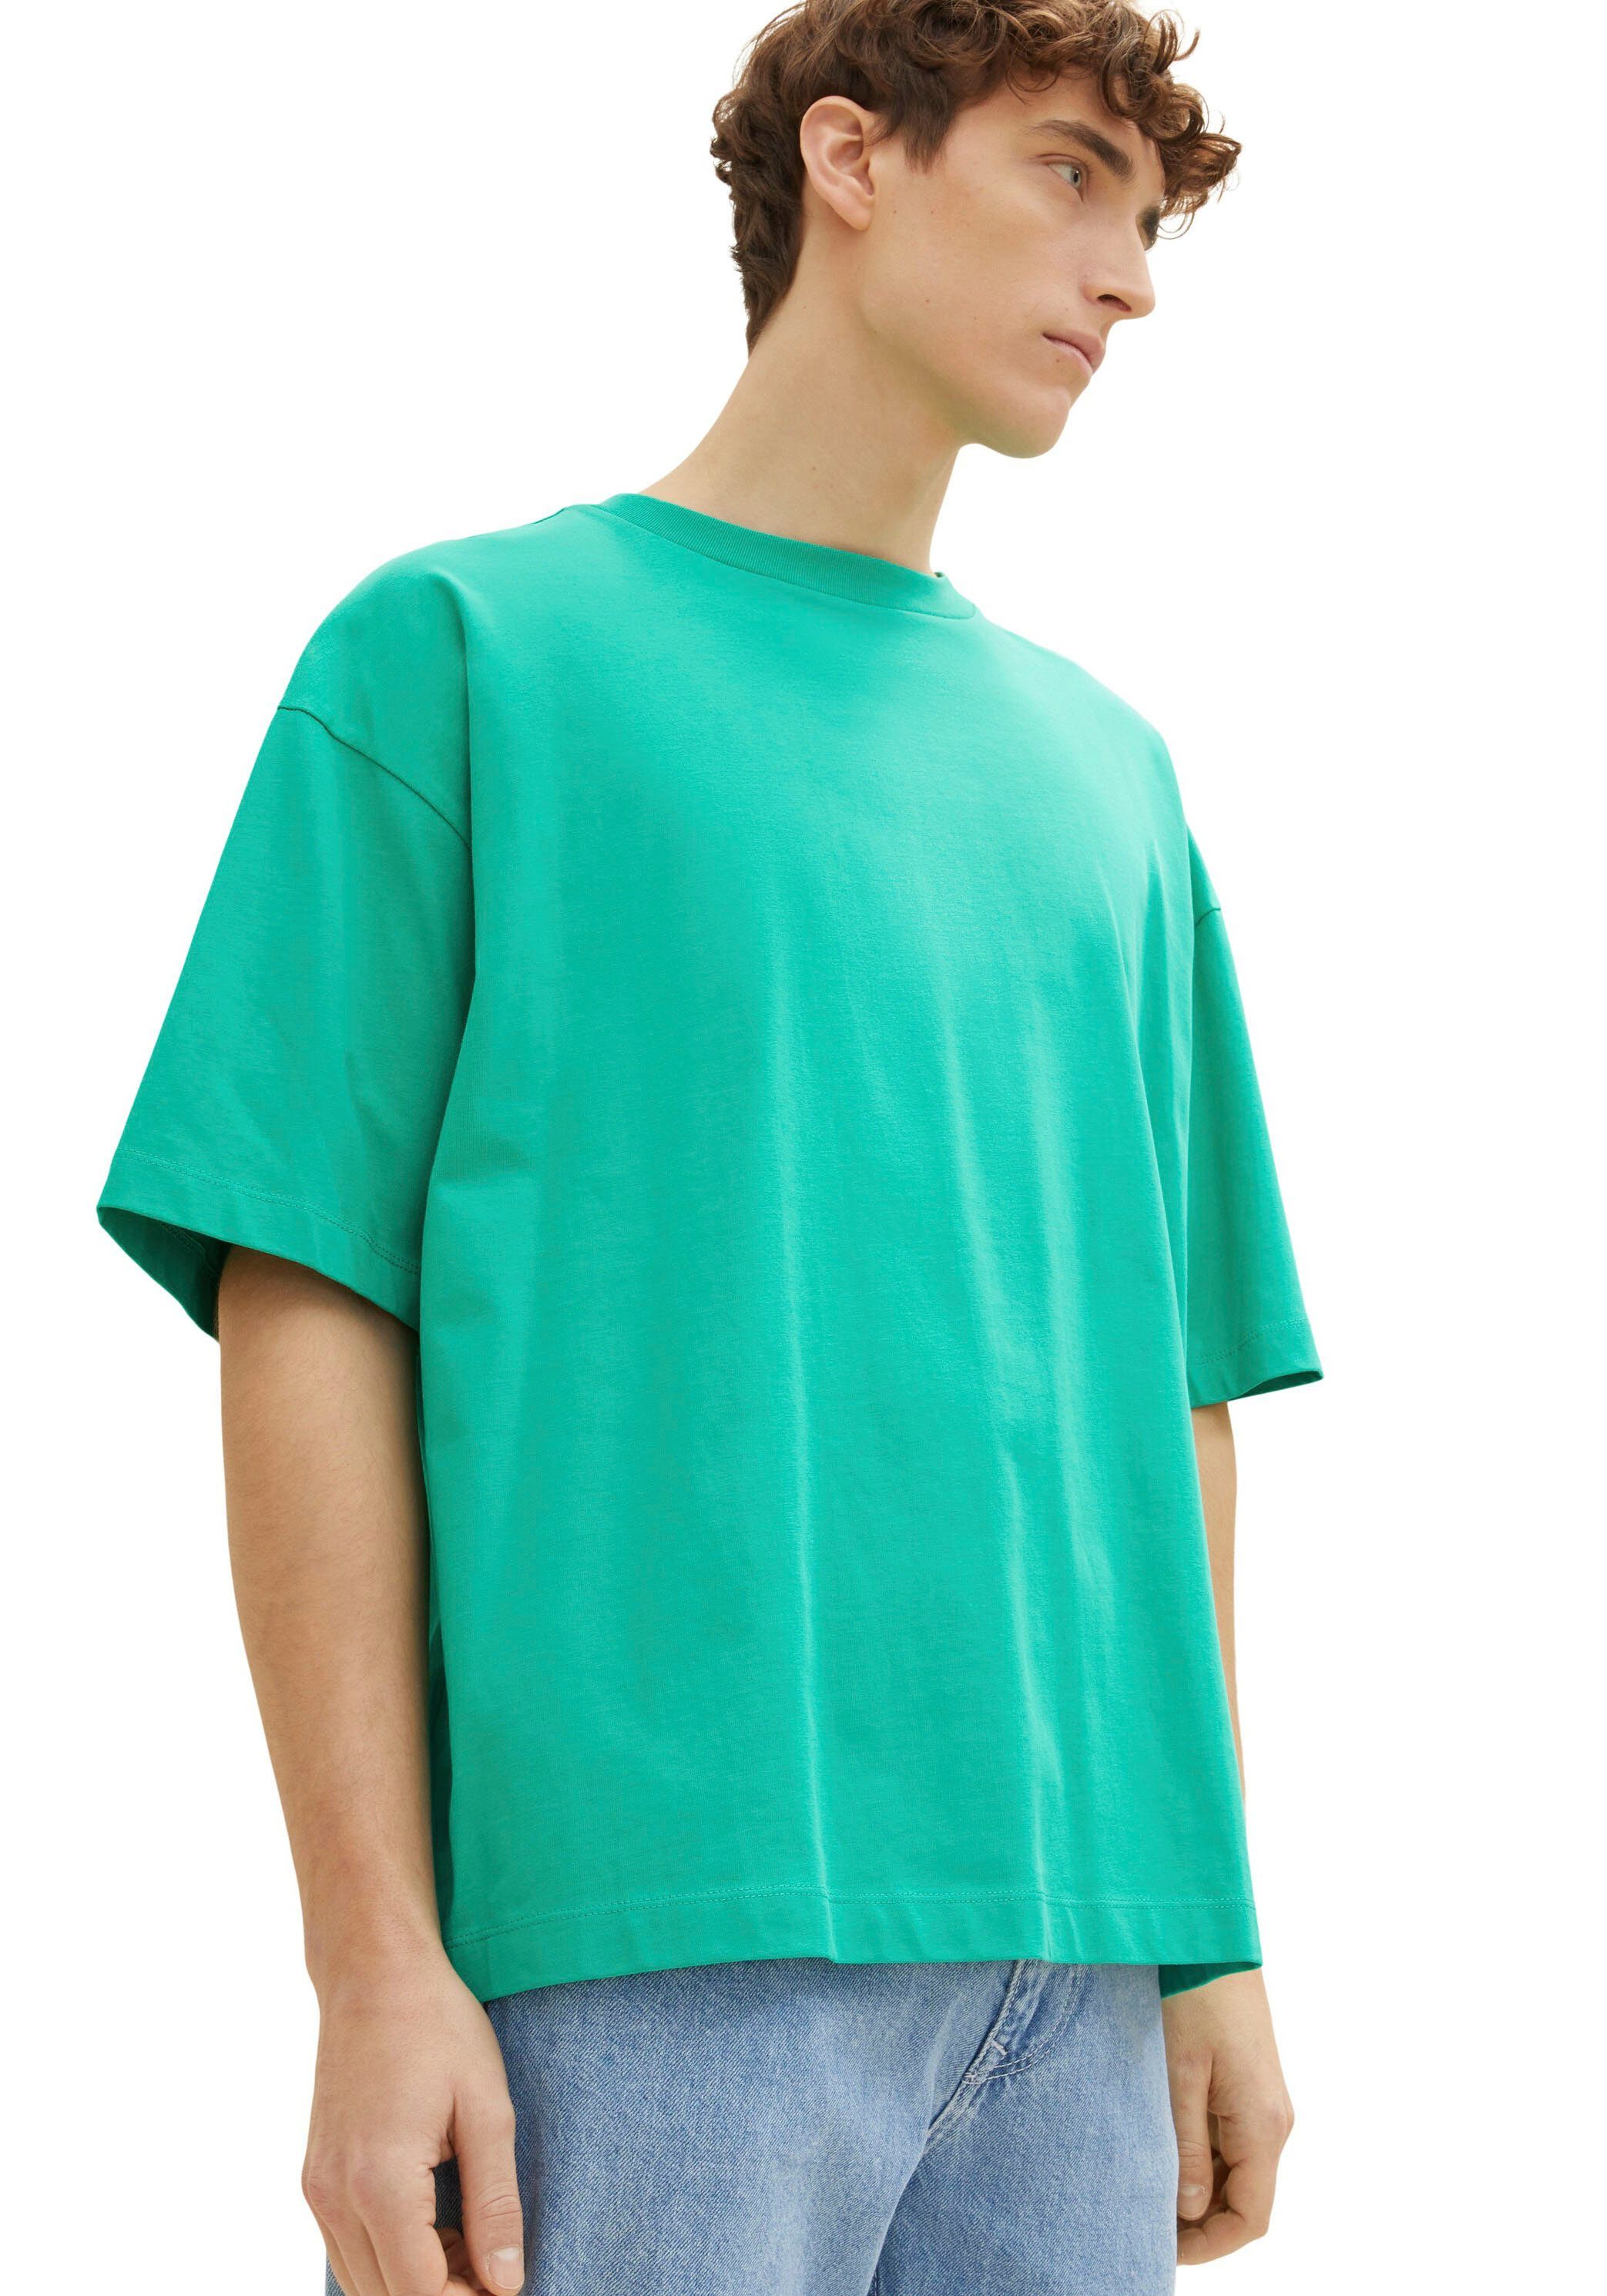 mit Denim Oversize-Shirt Rundhalsausschnitt TAILOR TOM grün